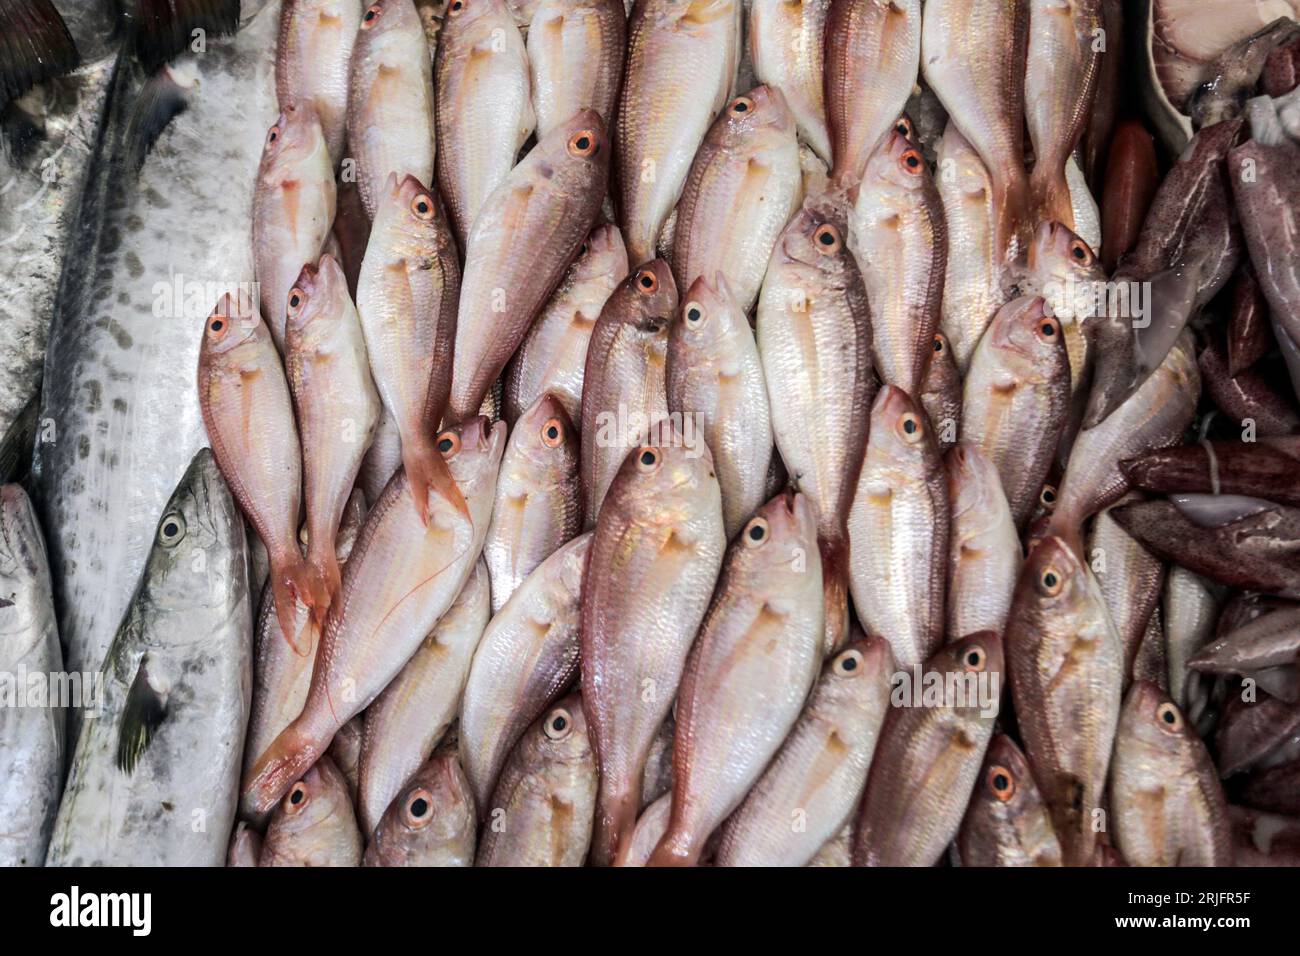 Pesque en el mercado central de pescado llamado 'Al-Hisba' en la ciudad de Gaza después de regresar de un viaje de pesca desde el mar Mediterráneo, en Gaza. Los pescadores palestinos son objeto de violaciones diarias por parte de los barcos israelíes, y hoy es una posición en solidaridad con los pescadores en el puerto de Gaza. Foto de stock